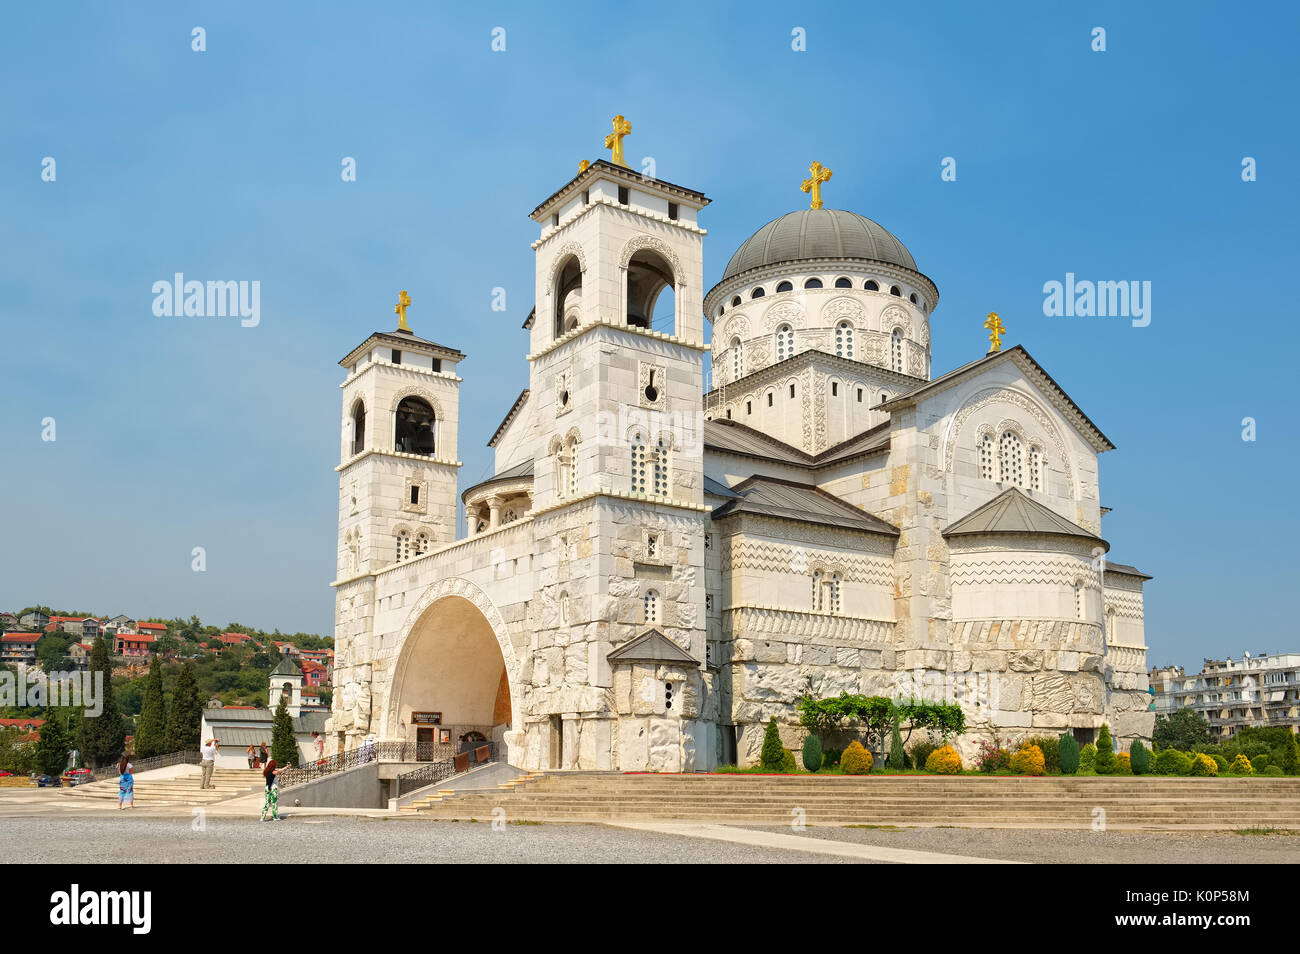 Hauptstadt von Montenegro, Podgorica. Blick auf die Kathedrale der Auferstehung Christi, Sehenswürdigkeiten Stockfoto